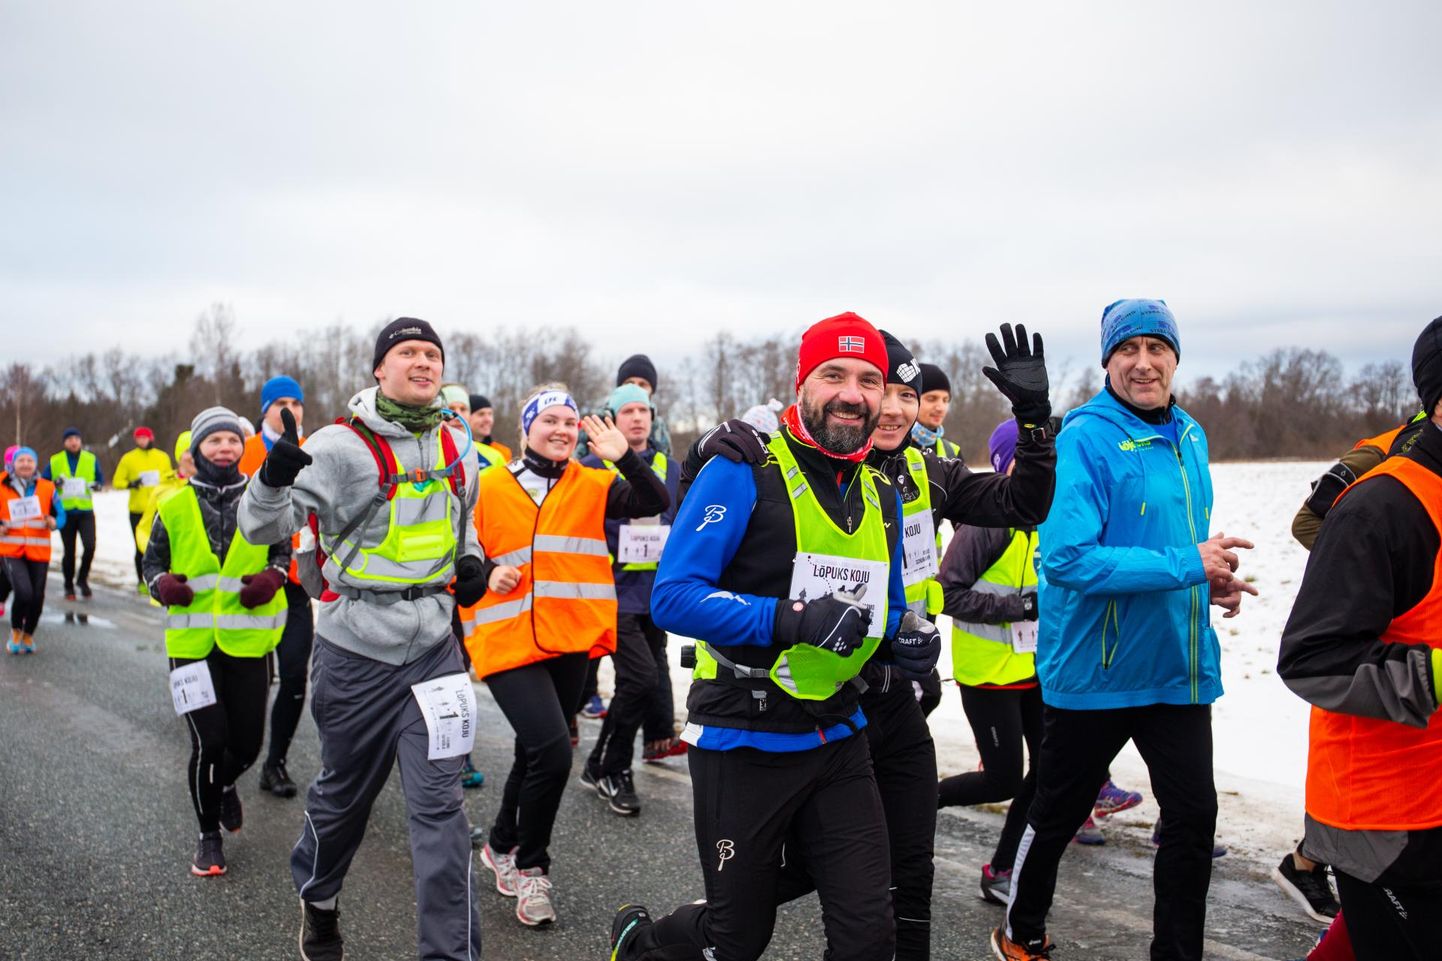 Eesti 100 puhul toimunud jooks vaheldumisi kõnniga andis “Lõpuks koju” ürituse igale osalejale kilomeetri.